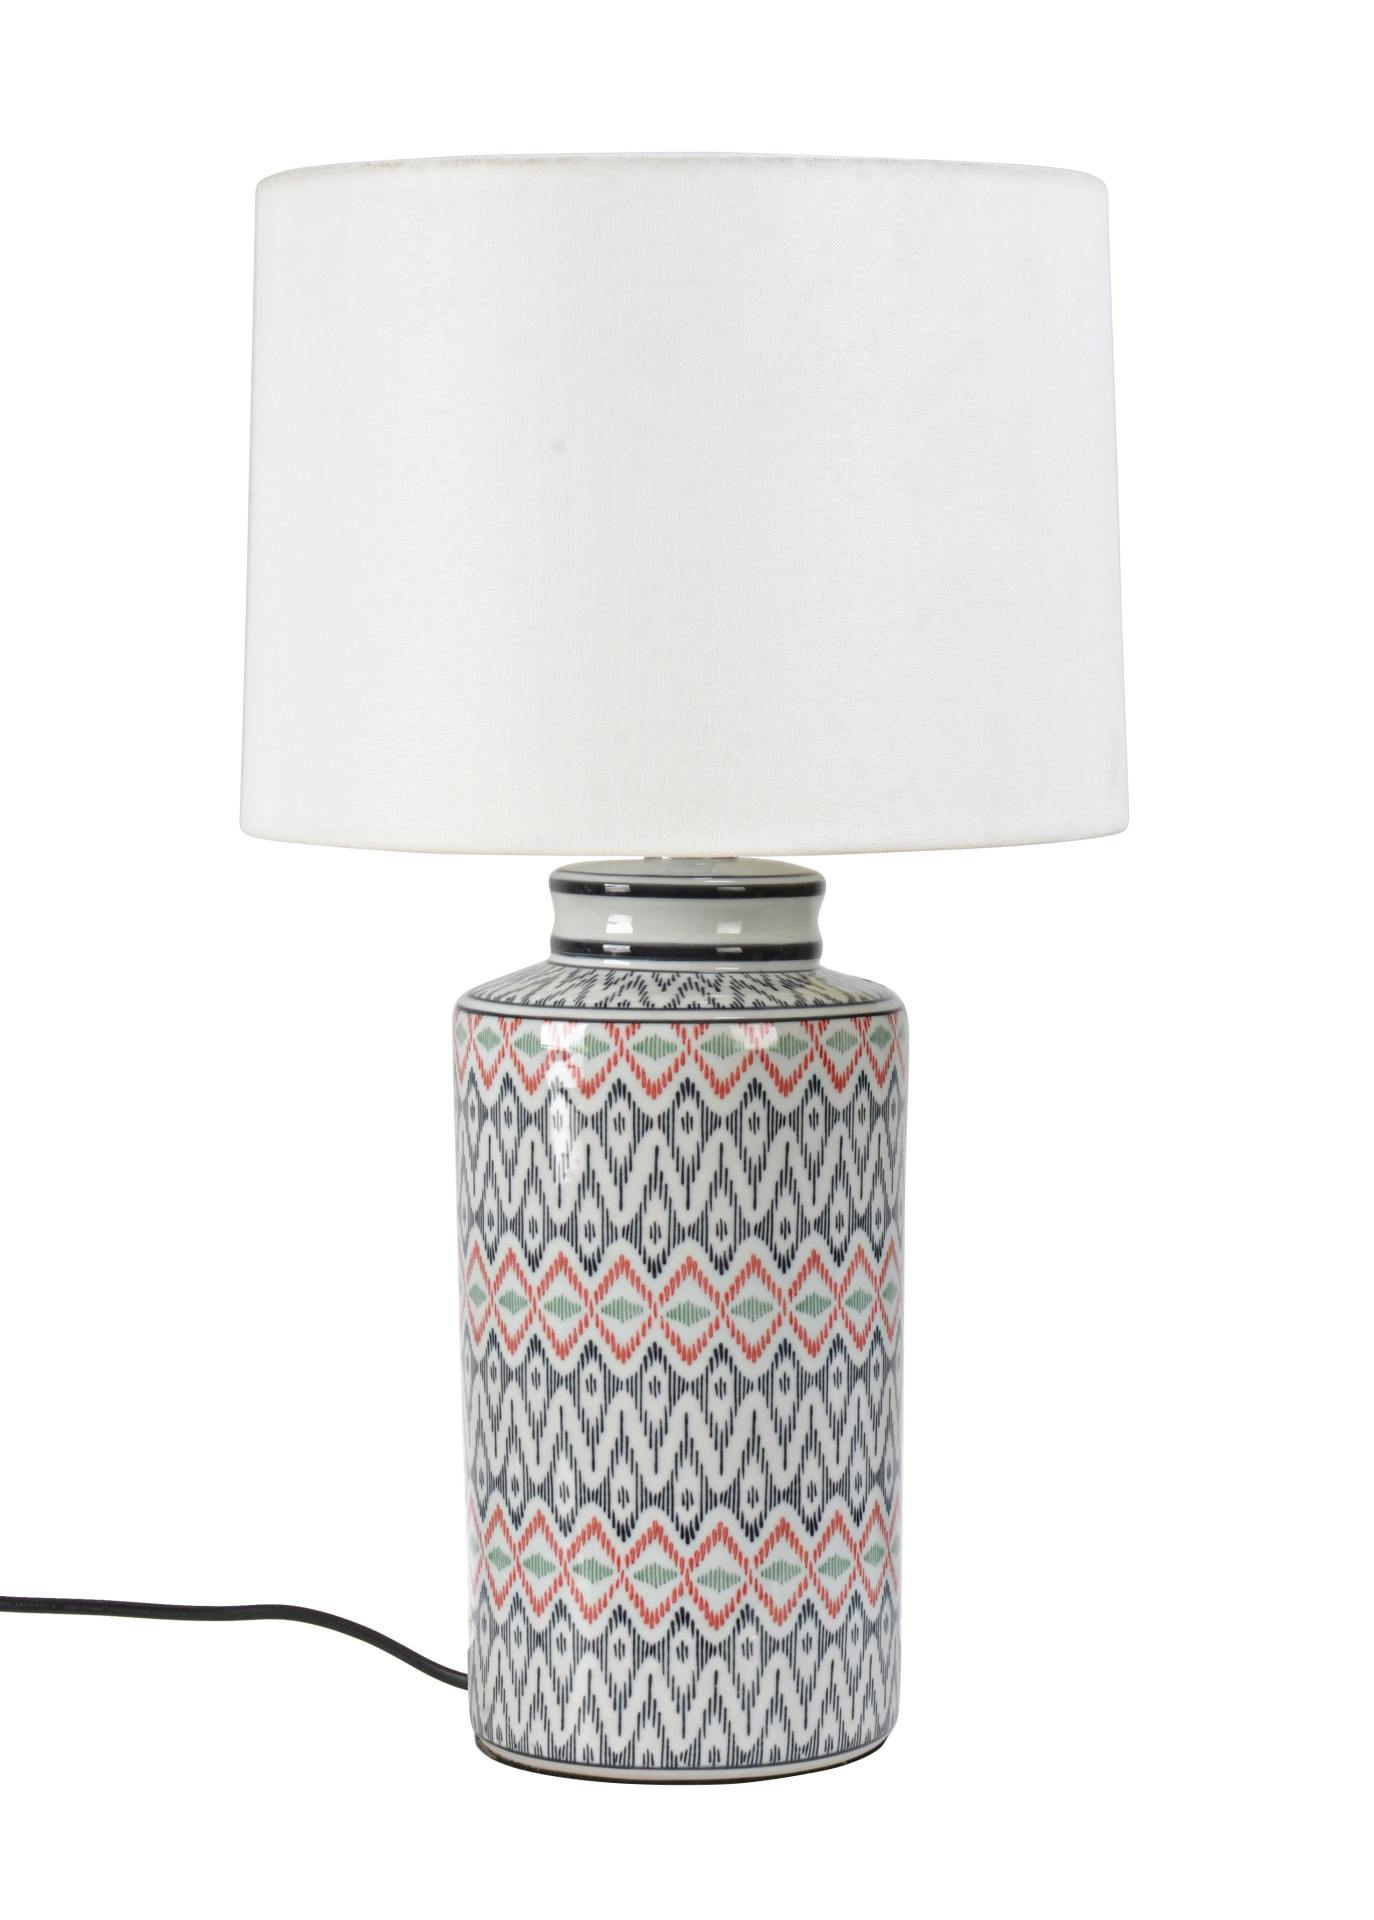 Die Tischleuchte Congo überzeugt mit ihrem klassischen Design. Gefertigt wurde sie aus Porzellan, welches einen mehrfarbigen Farbton besitzt. Die Lampenschirme ist aus Polyester und hat eine weiße Farbe. Die Lampe besitzt eine Höhe von 63 cm.